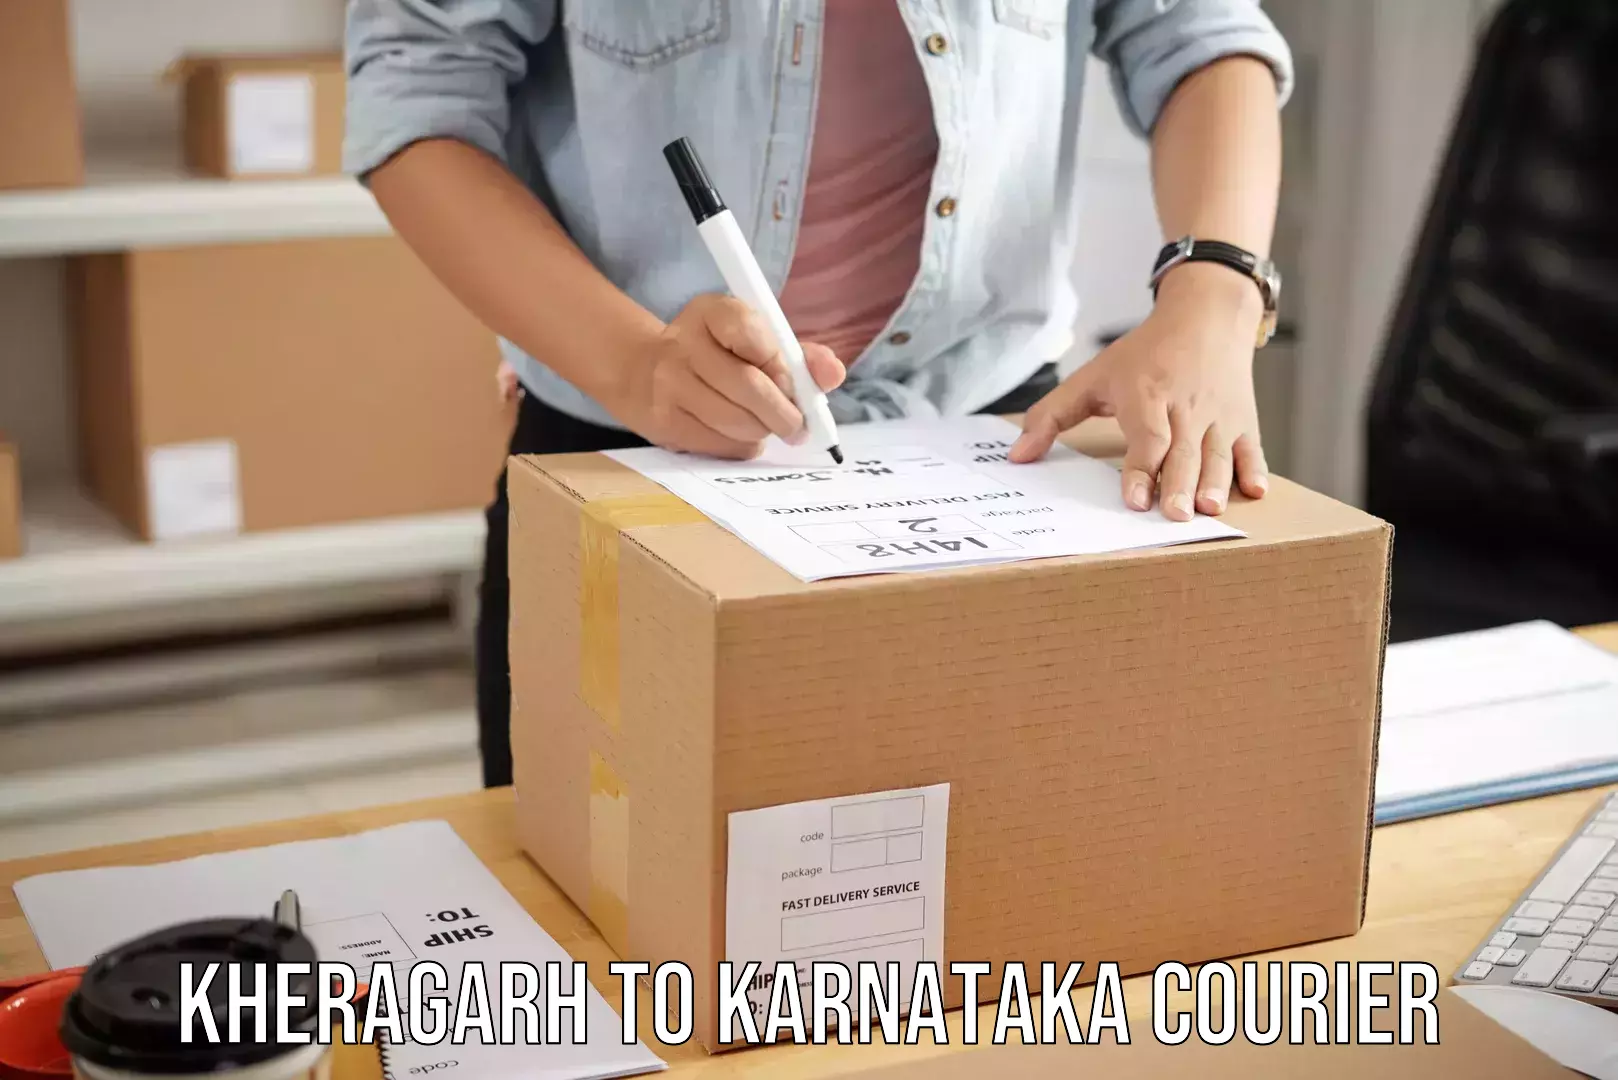 Baggage transport management Kheragarh to Karnataka